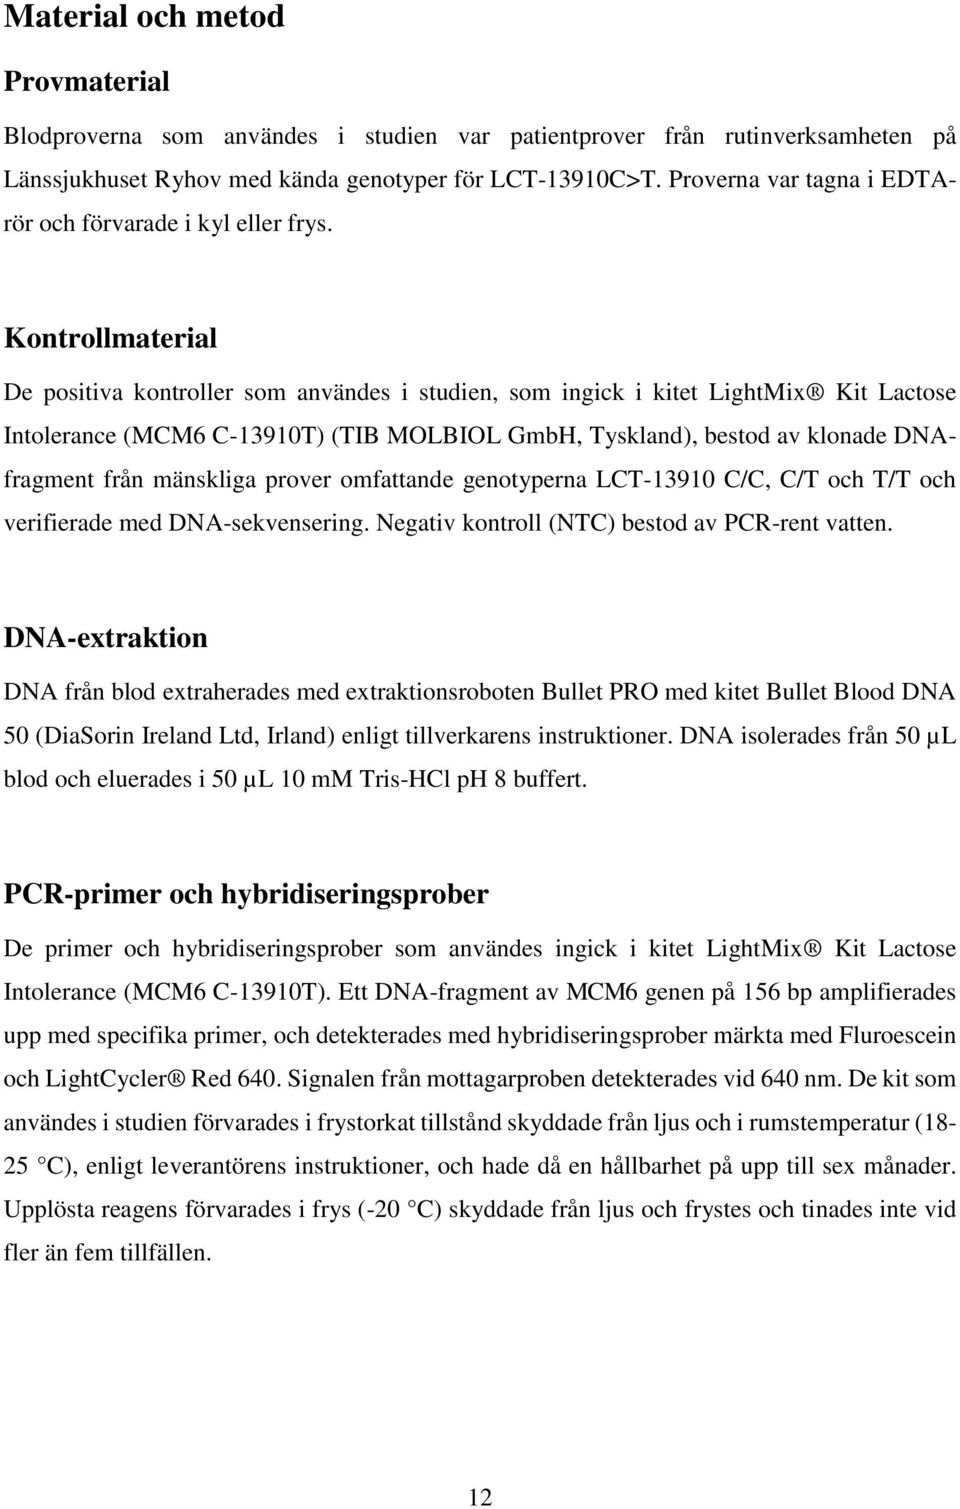 Kontrollmaterial De positiva kontroller som användes i studien, som ingick i kitet LightMix Kit Lactose Intolerance (MCM6 C-13910T) (TIB MOLBIOL GmbH, Tyskland), bestod av klonade DNAfragment från